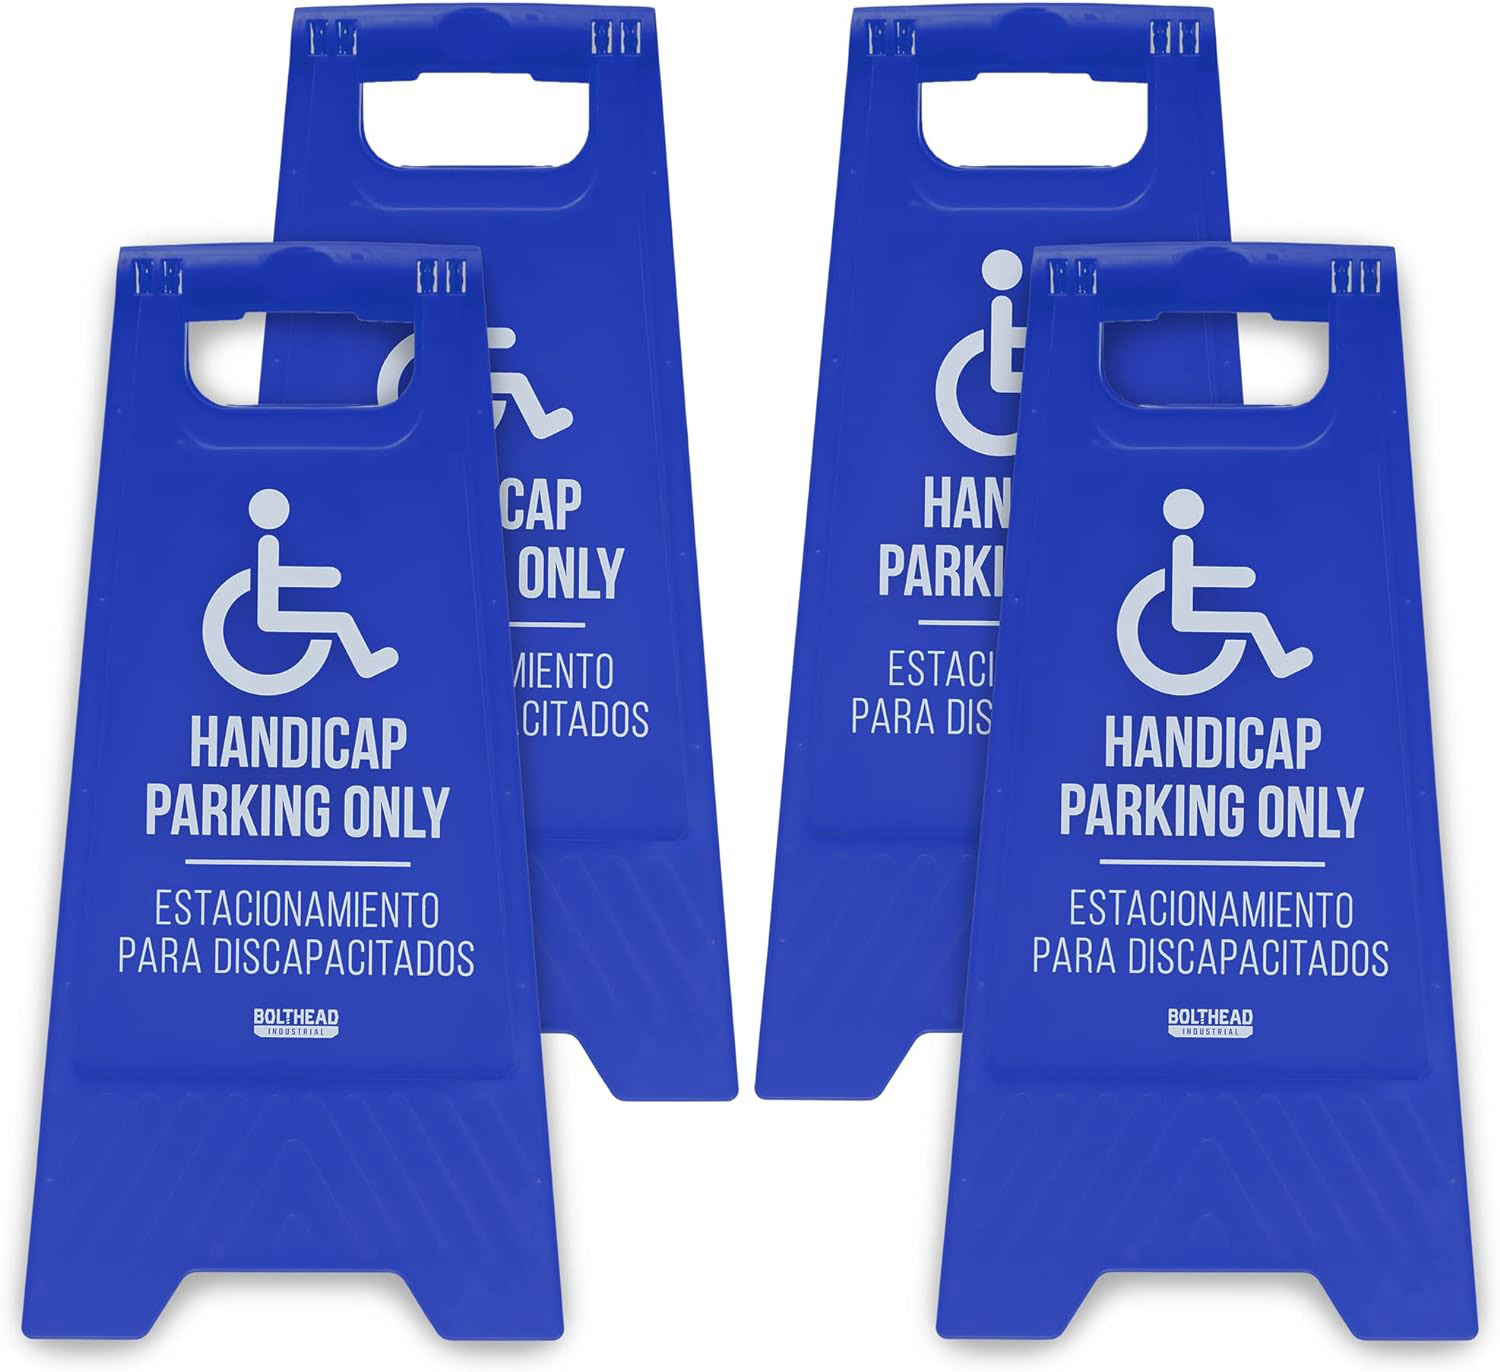 Handicap Parking Only Floor Signs